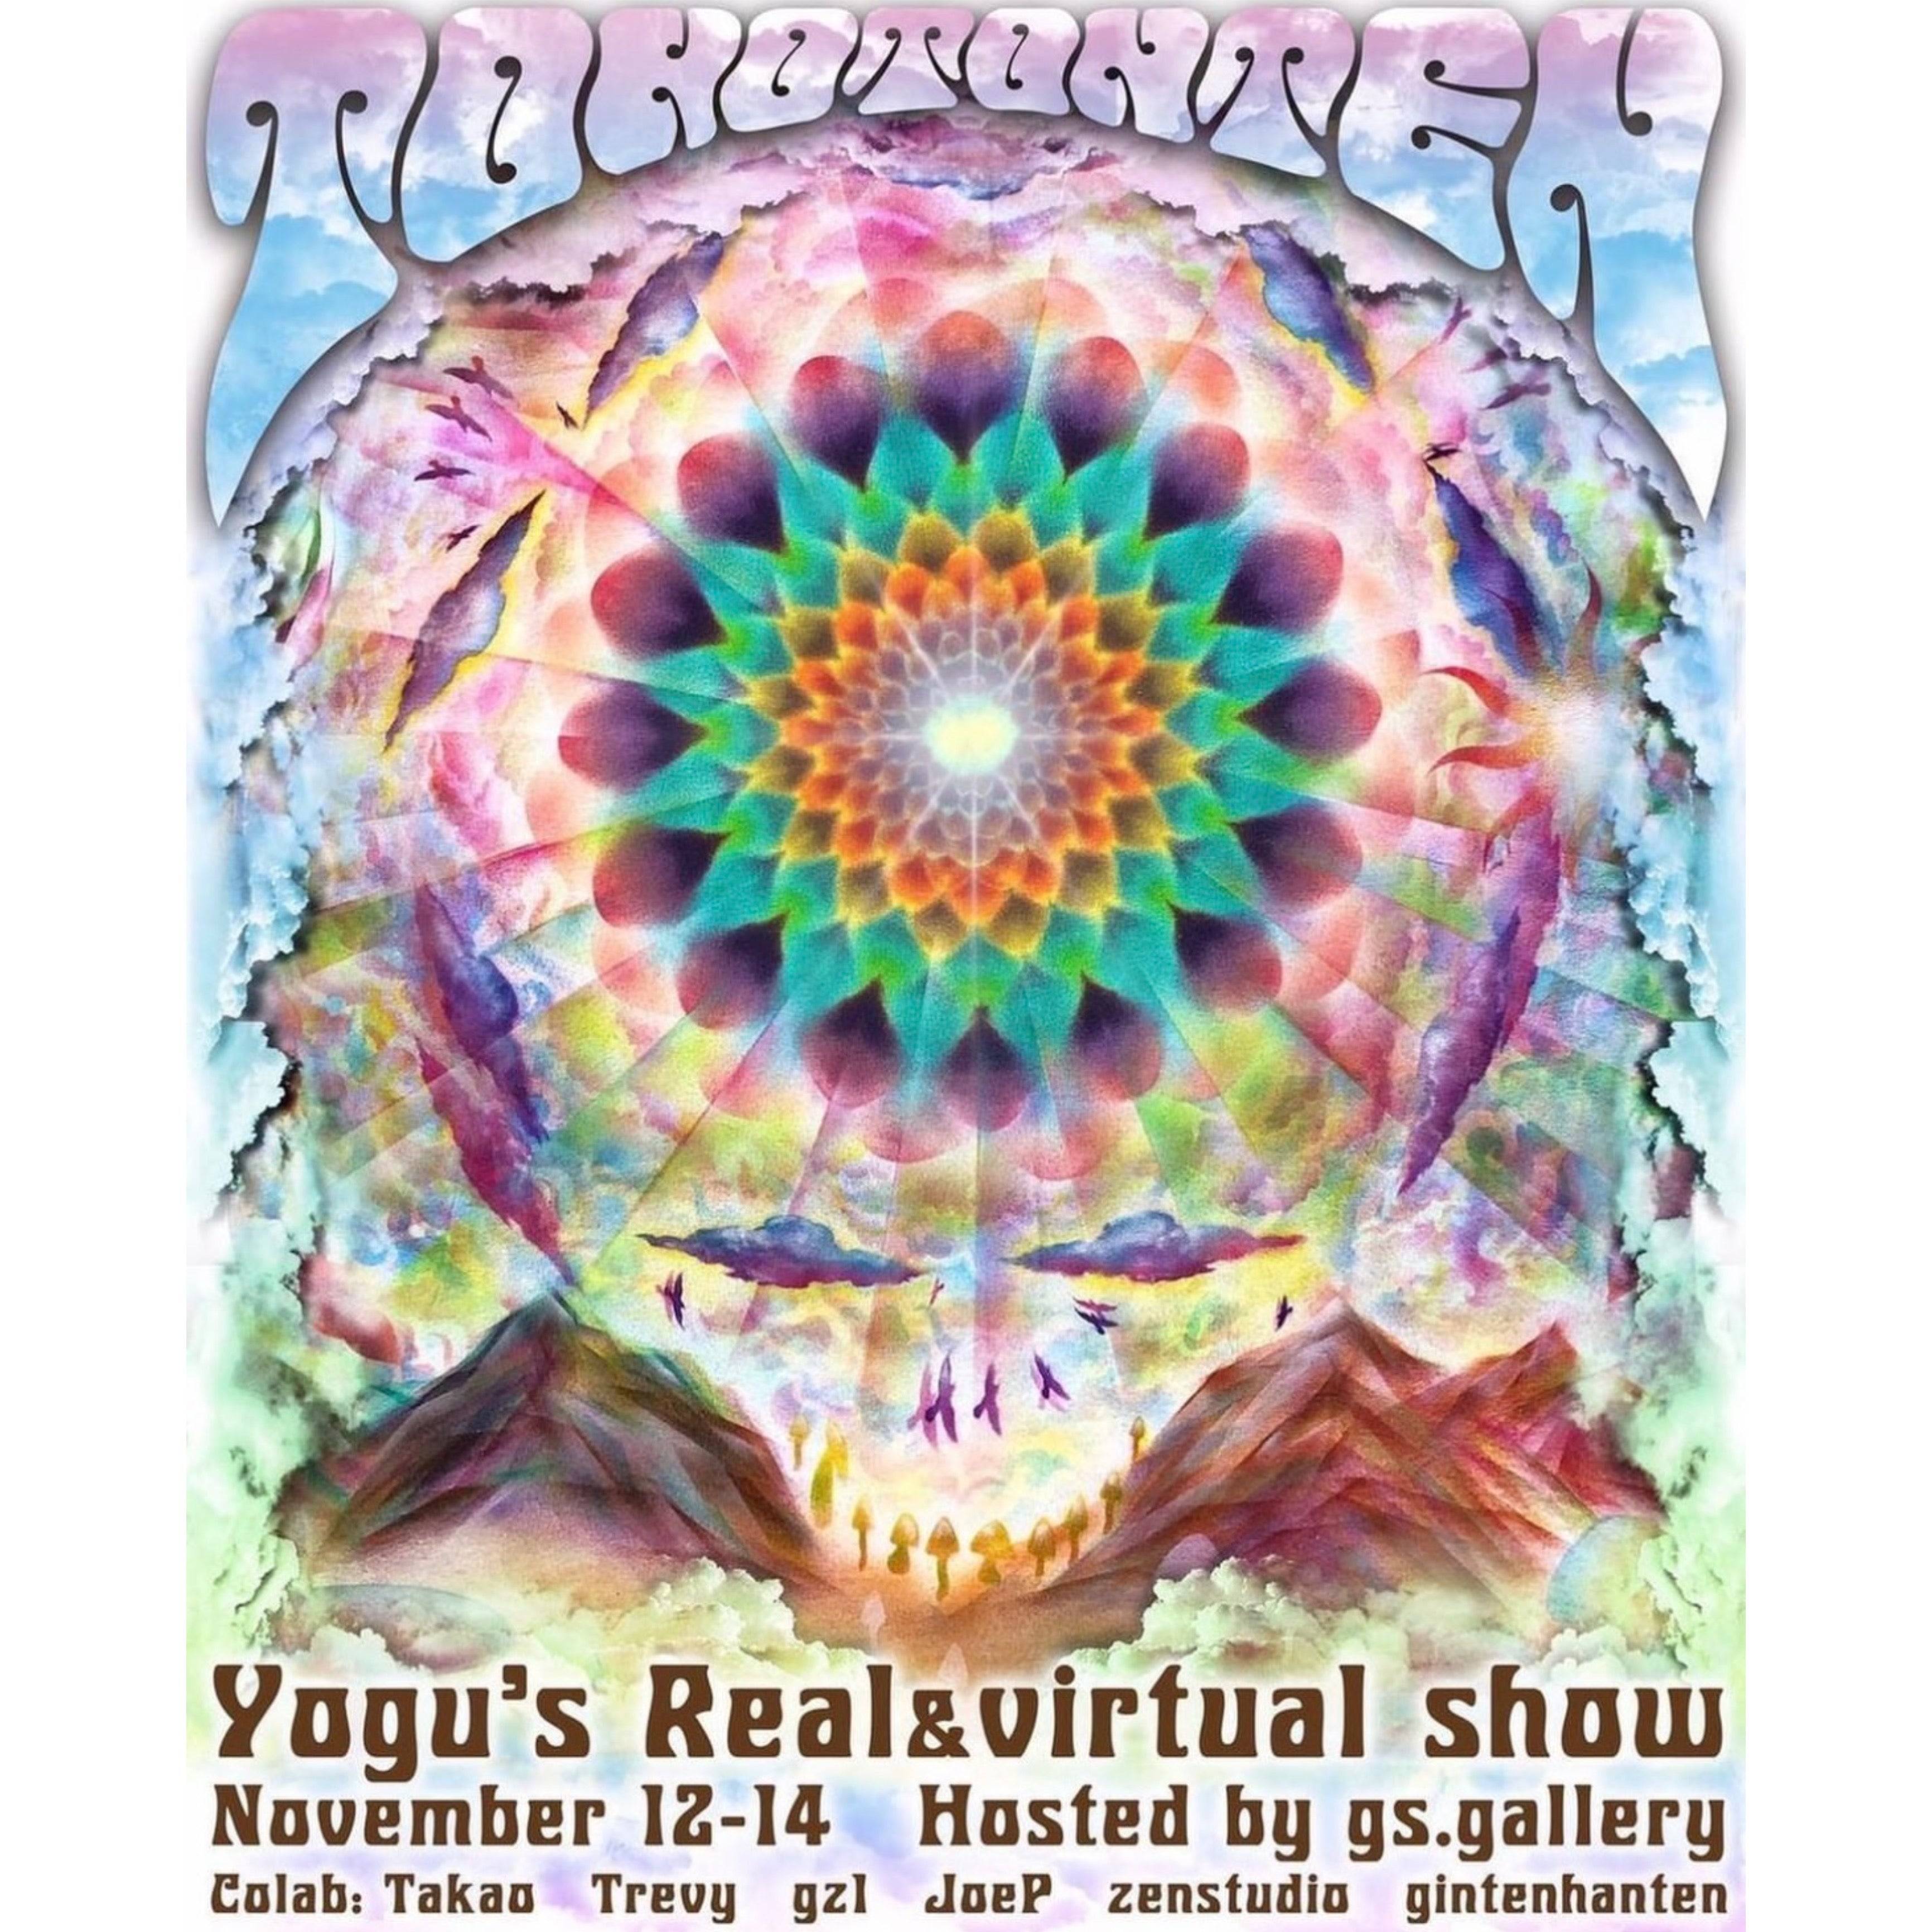 Yogu: Real & Virtual Show